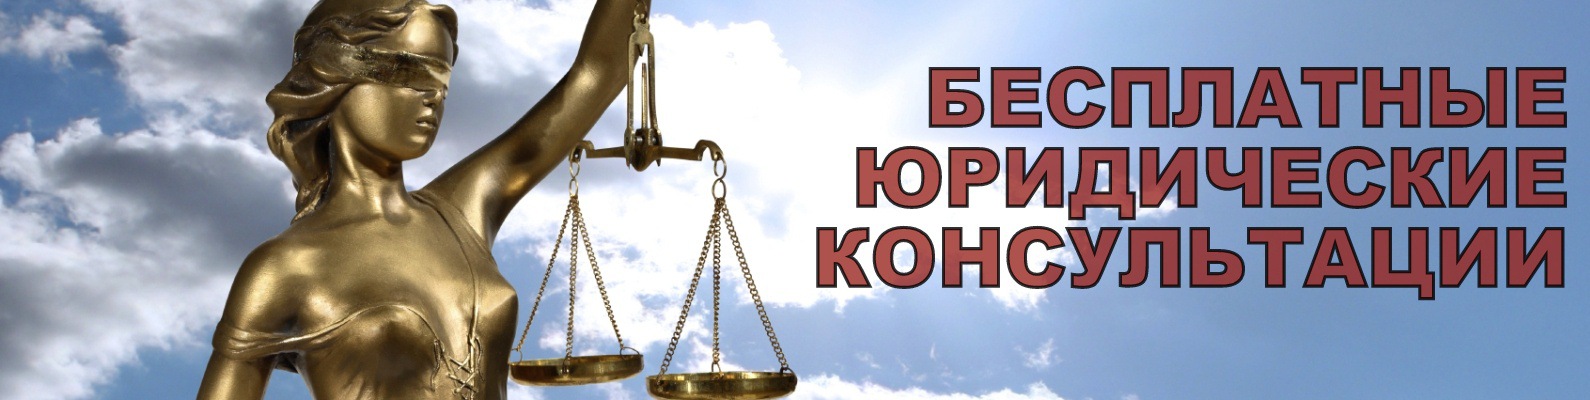 Бесплатные юридические консультации для малоимущих проведут белорусские адвокаты 15 марта